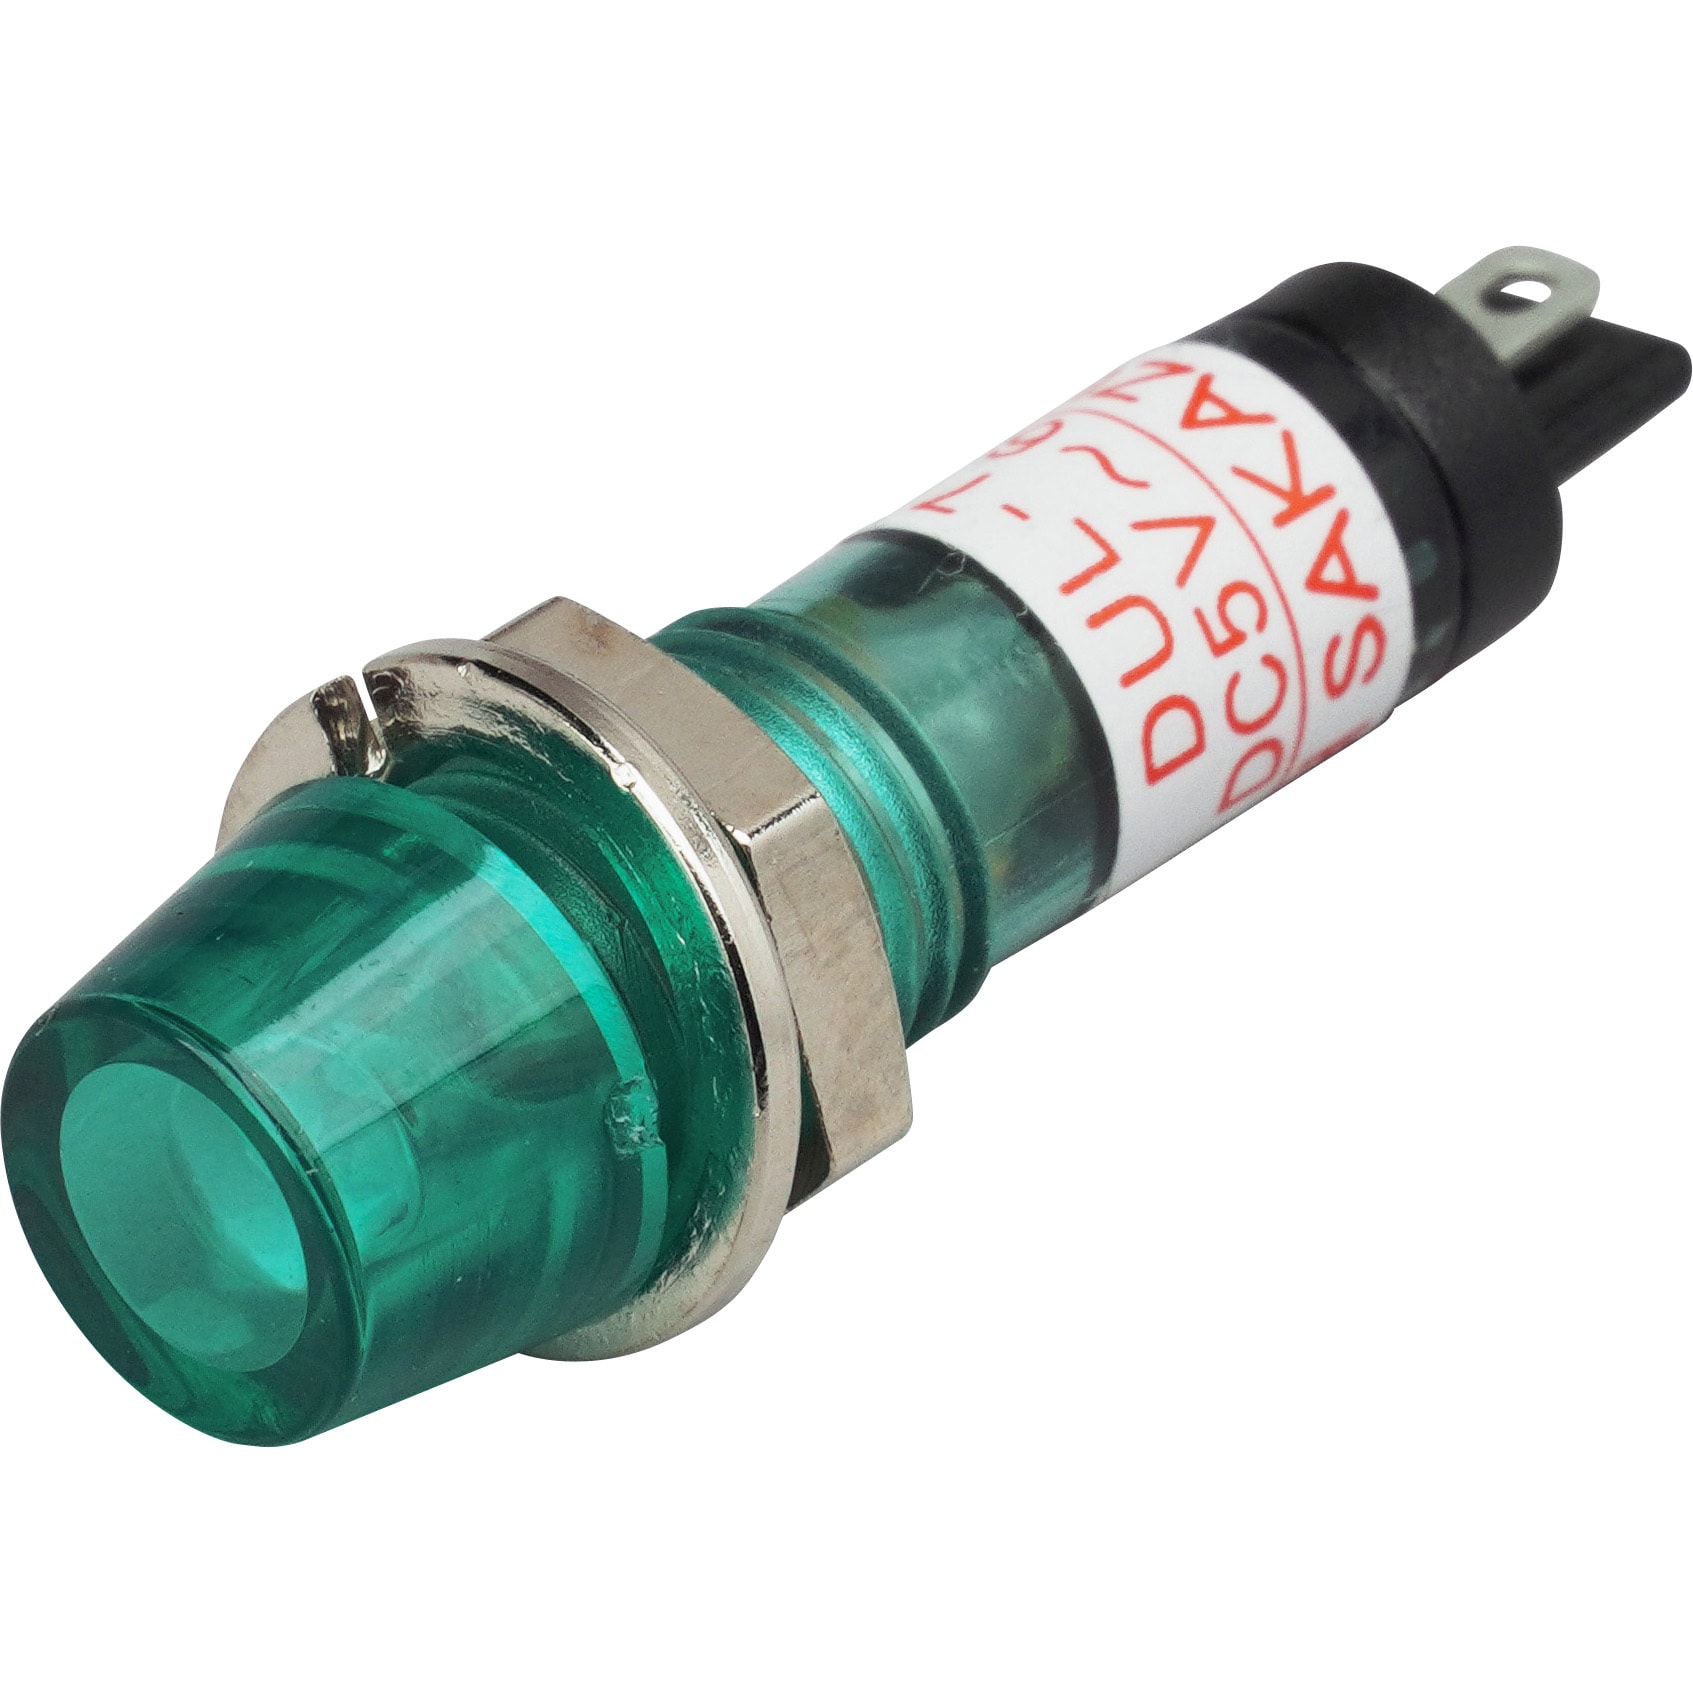 モールドフレーム形防水・防滴(IP65)超高輝度LED表示灯 Φ7 DC5～60V 発光色:緑